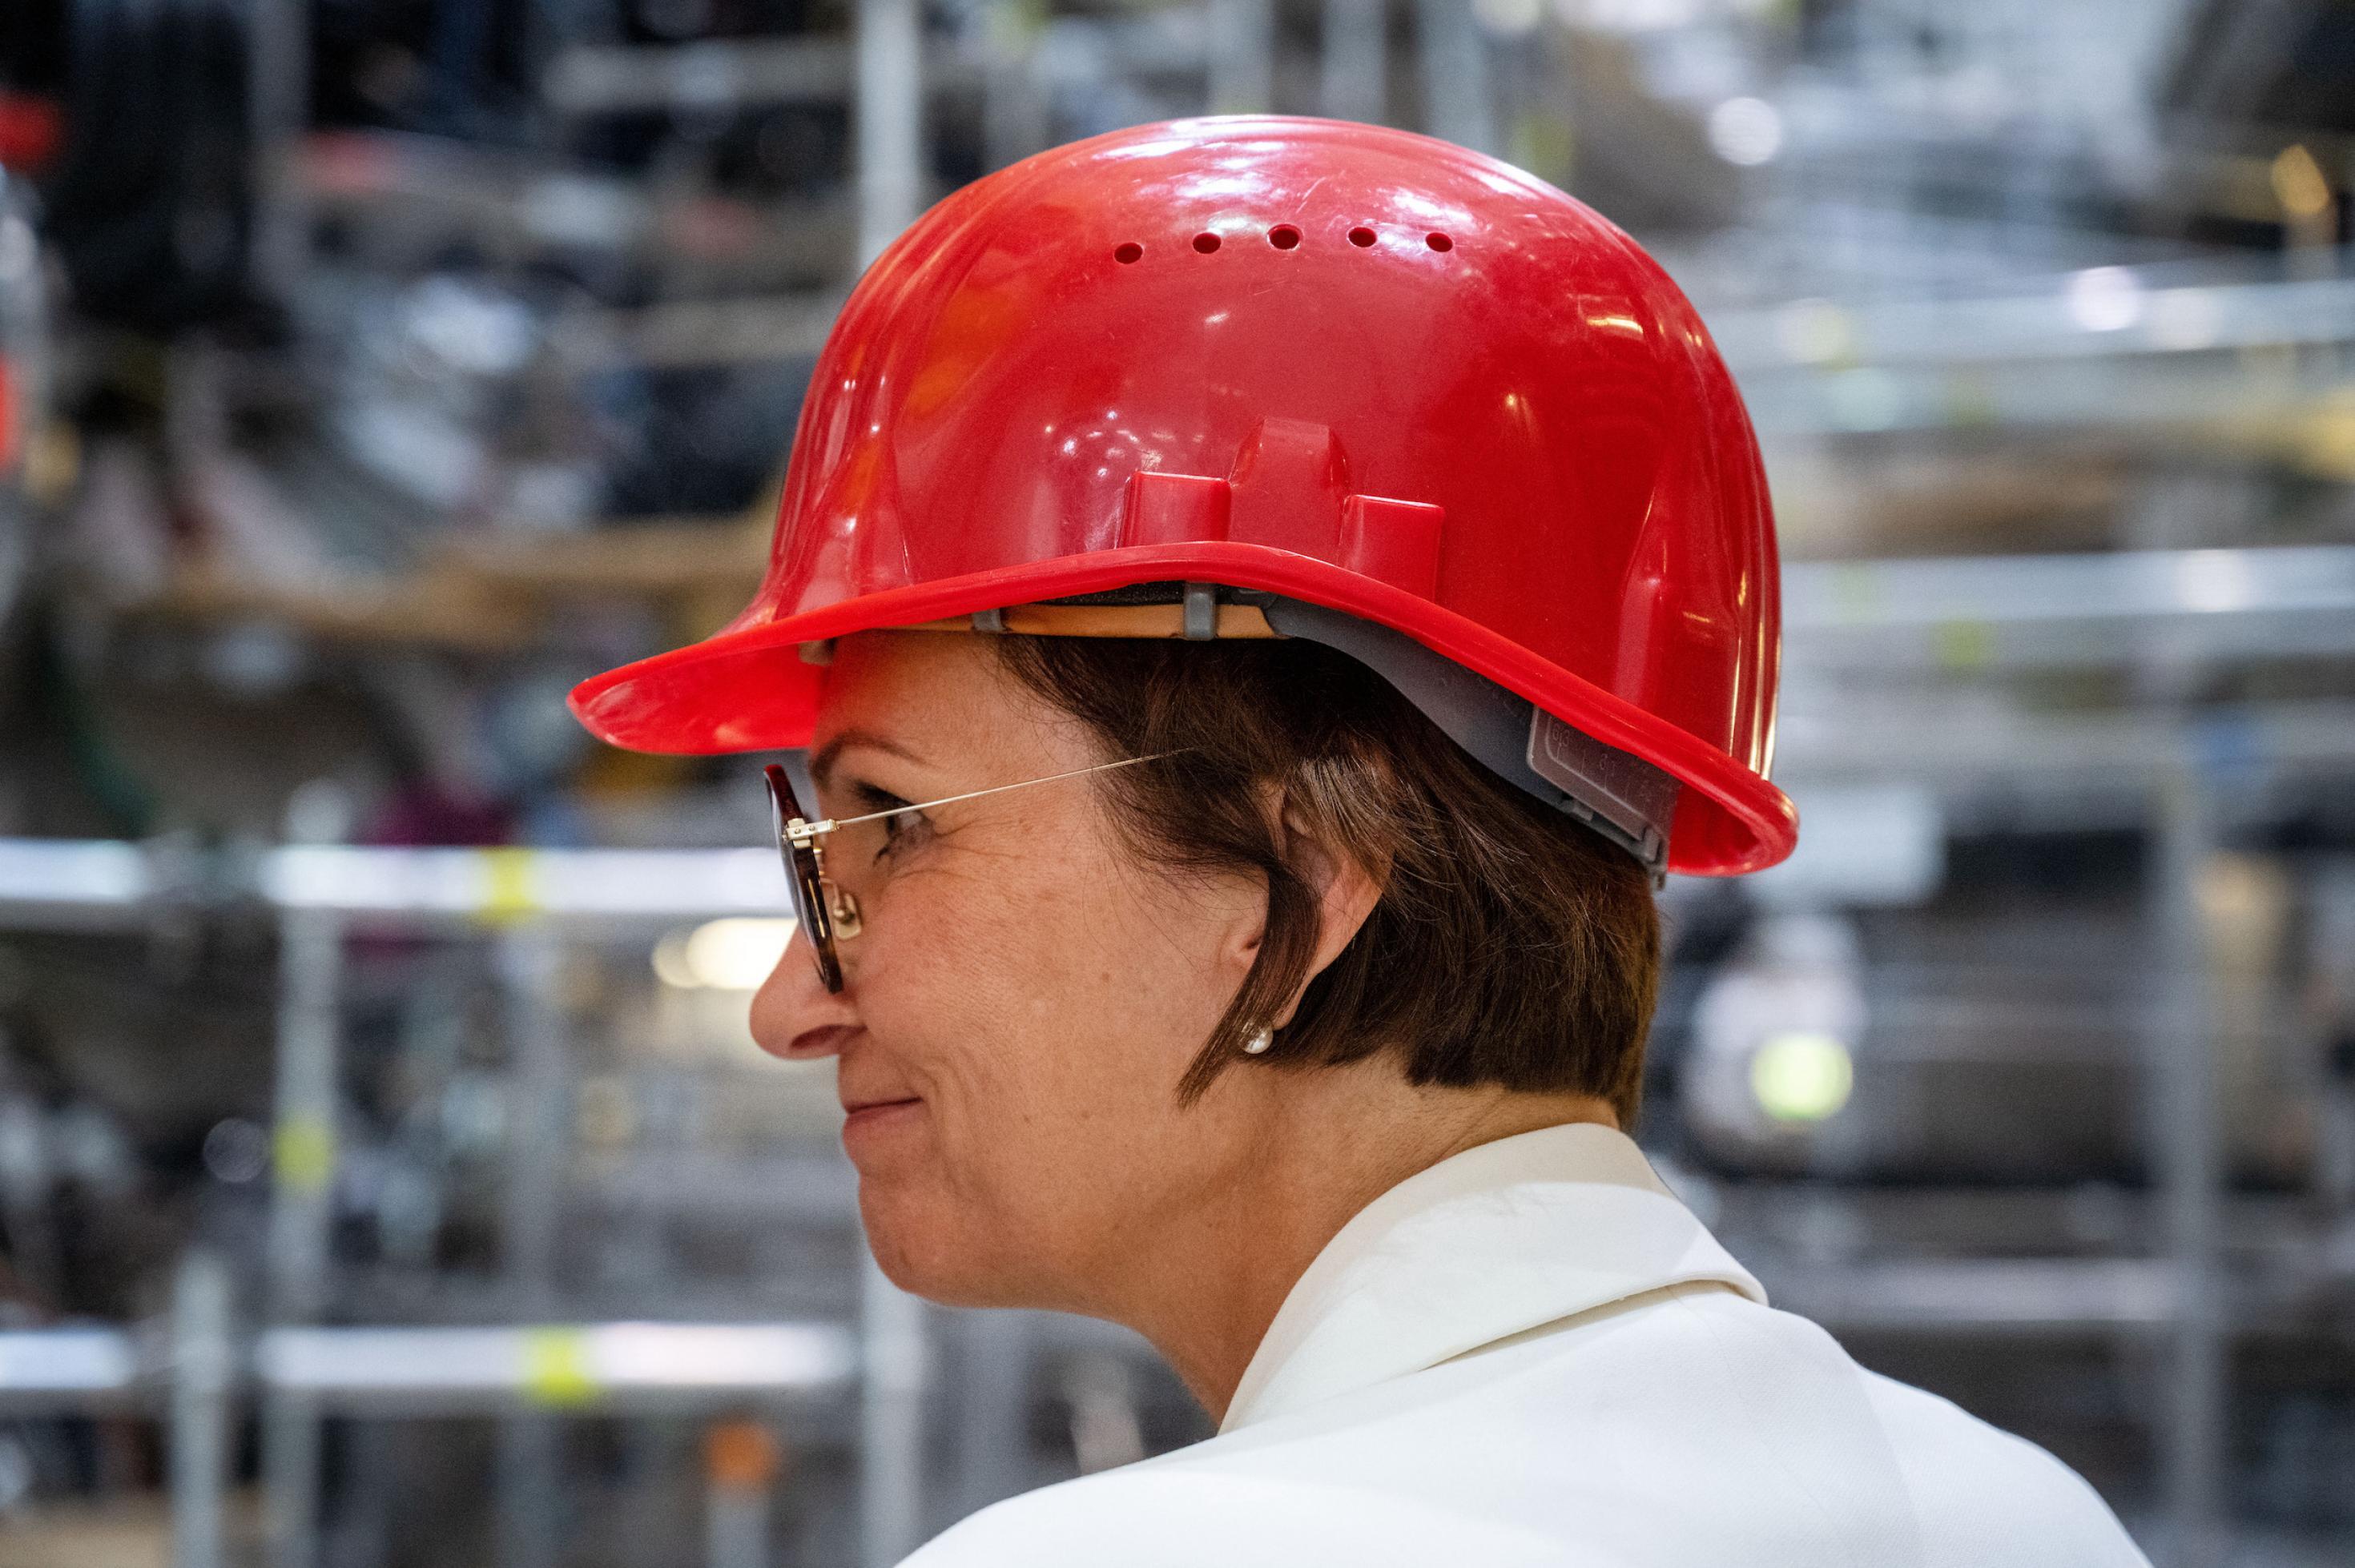 Die Politikerin mit rotem Helm for technischem Gerät.